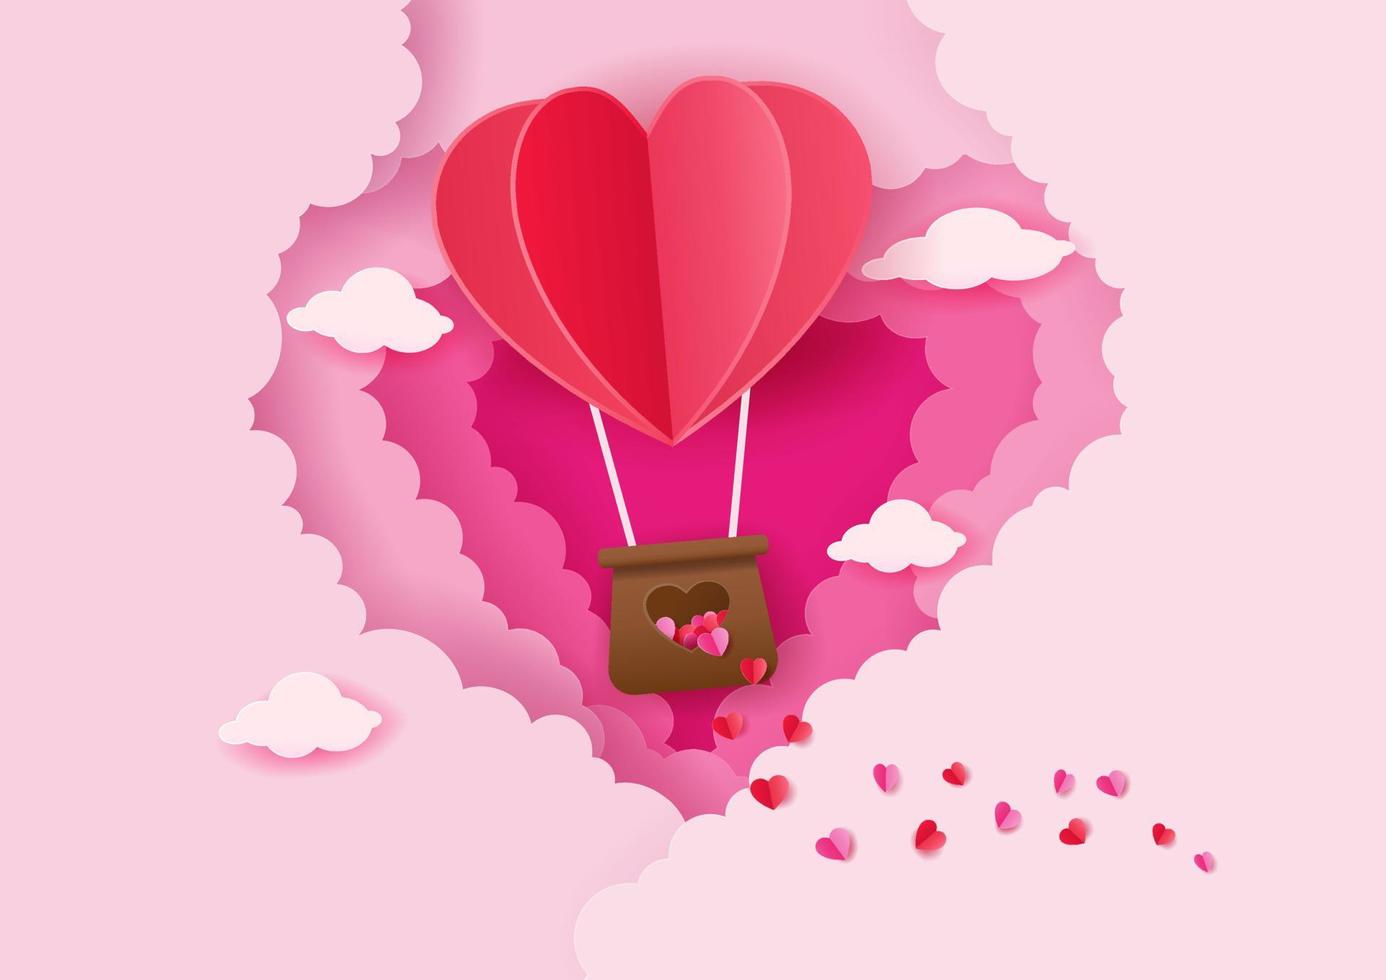 style d'art papier de ballon à air chaud en forme de coeur origami flottant nuages en forme de coeur, concept d'amour et de saint valentin vecteur